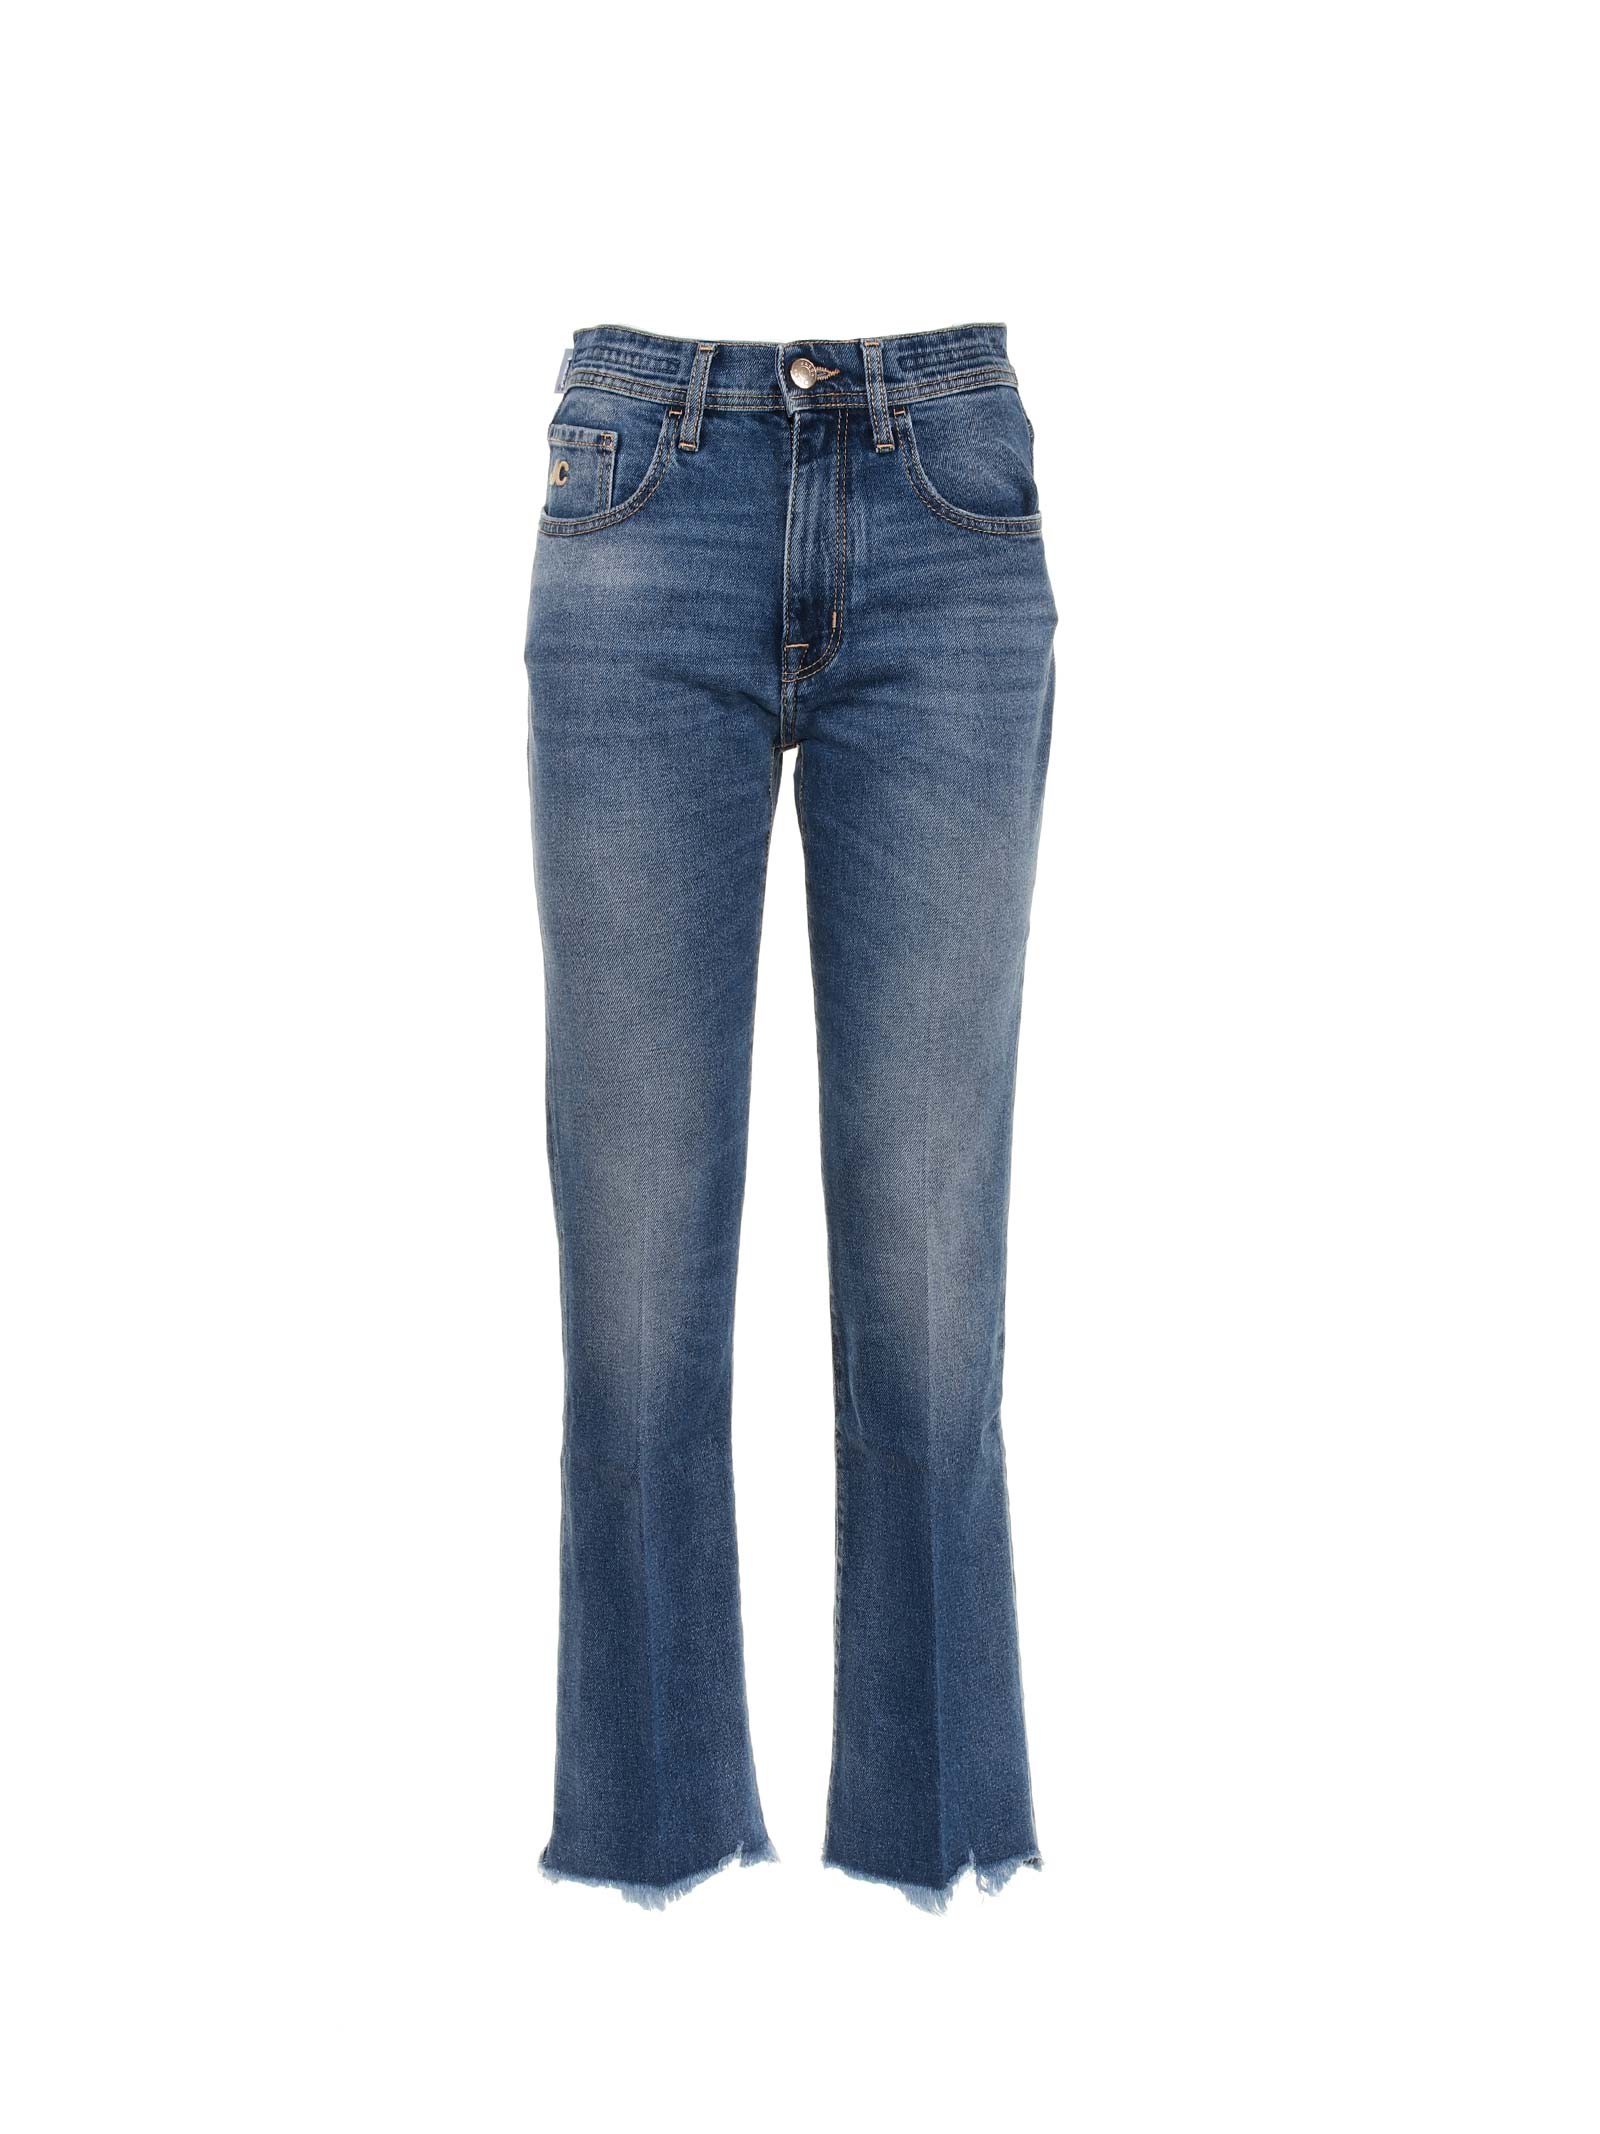 Jacob Cohen 5 Pockets Jeans Denim Blue